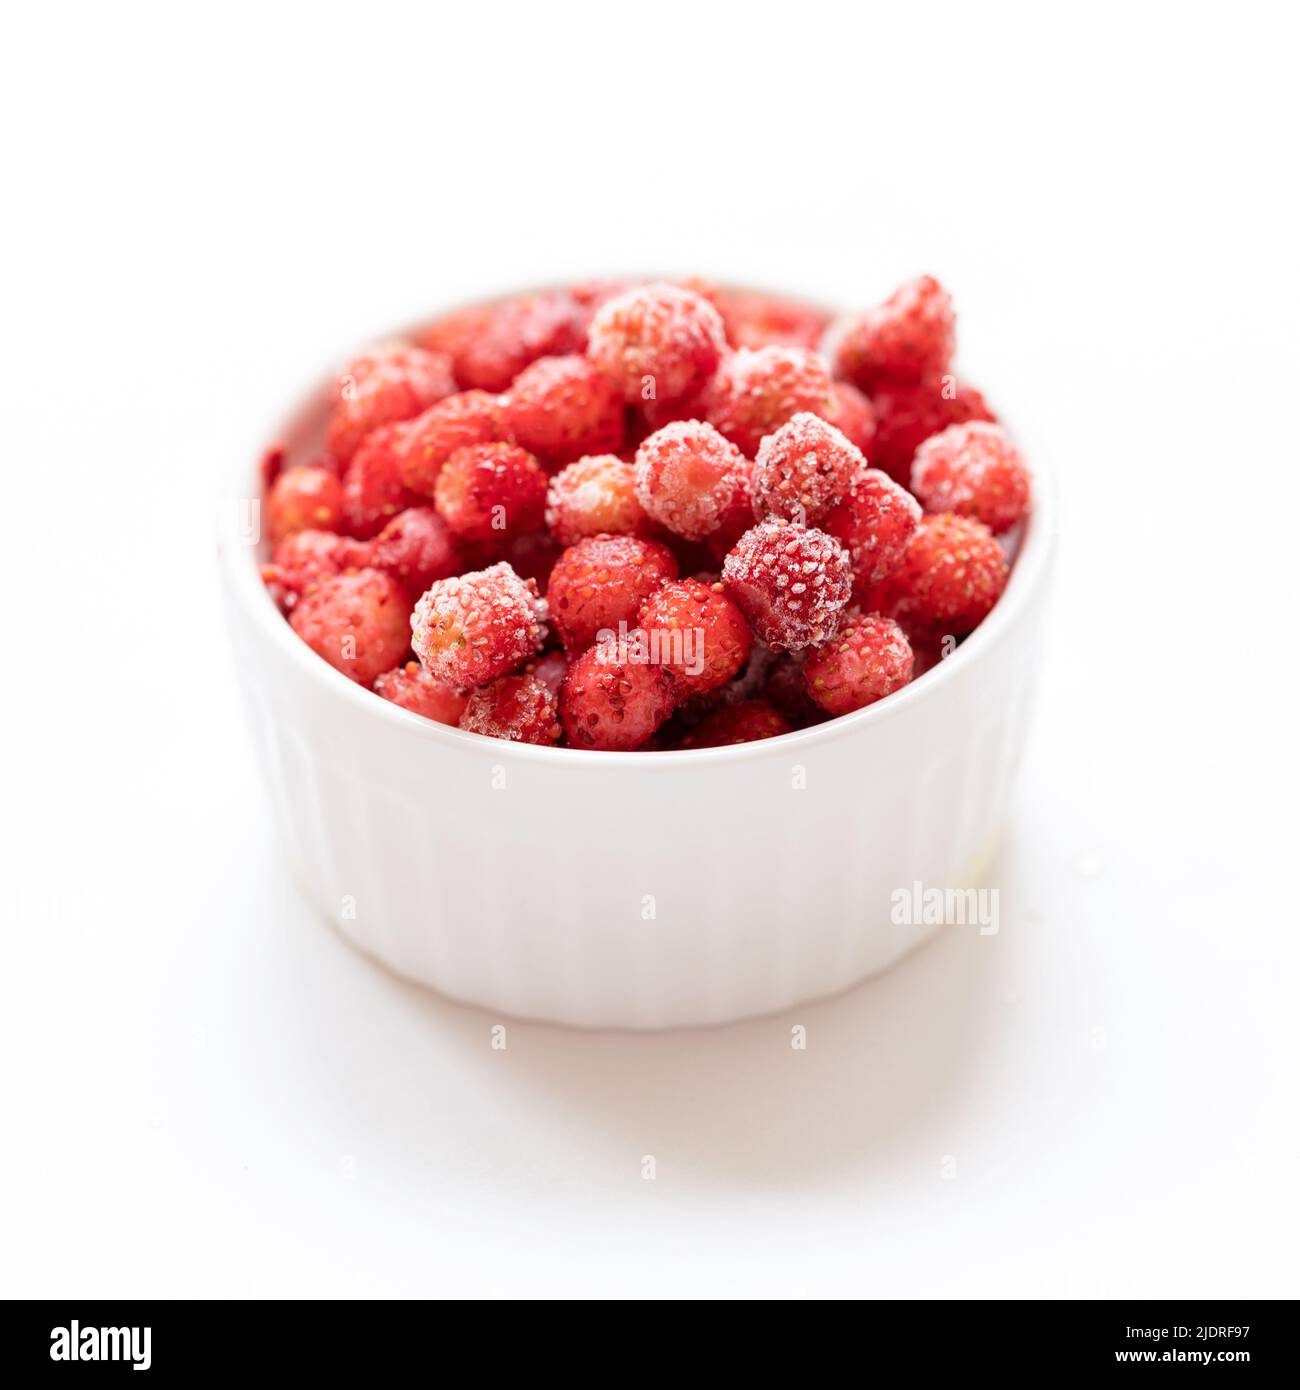 Gefrorene rote WaldErdbeere in weißer Schale auf weiß. Eingefrorenere Beeren sind gesunde Vorbereitungen für den Winter, da sie alle Vitamine enthalten. Selecti Stockfoto